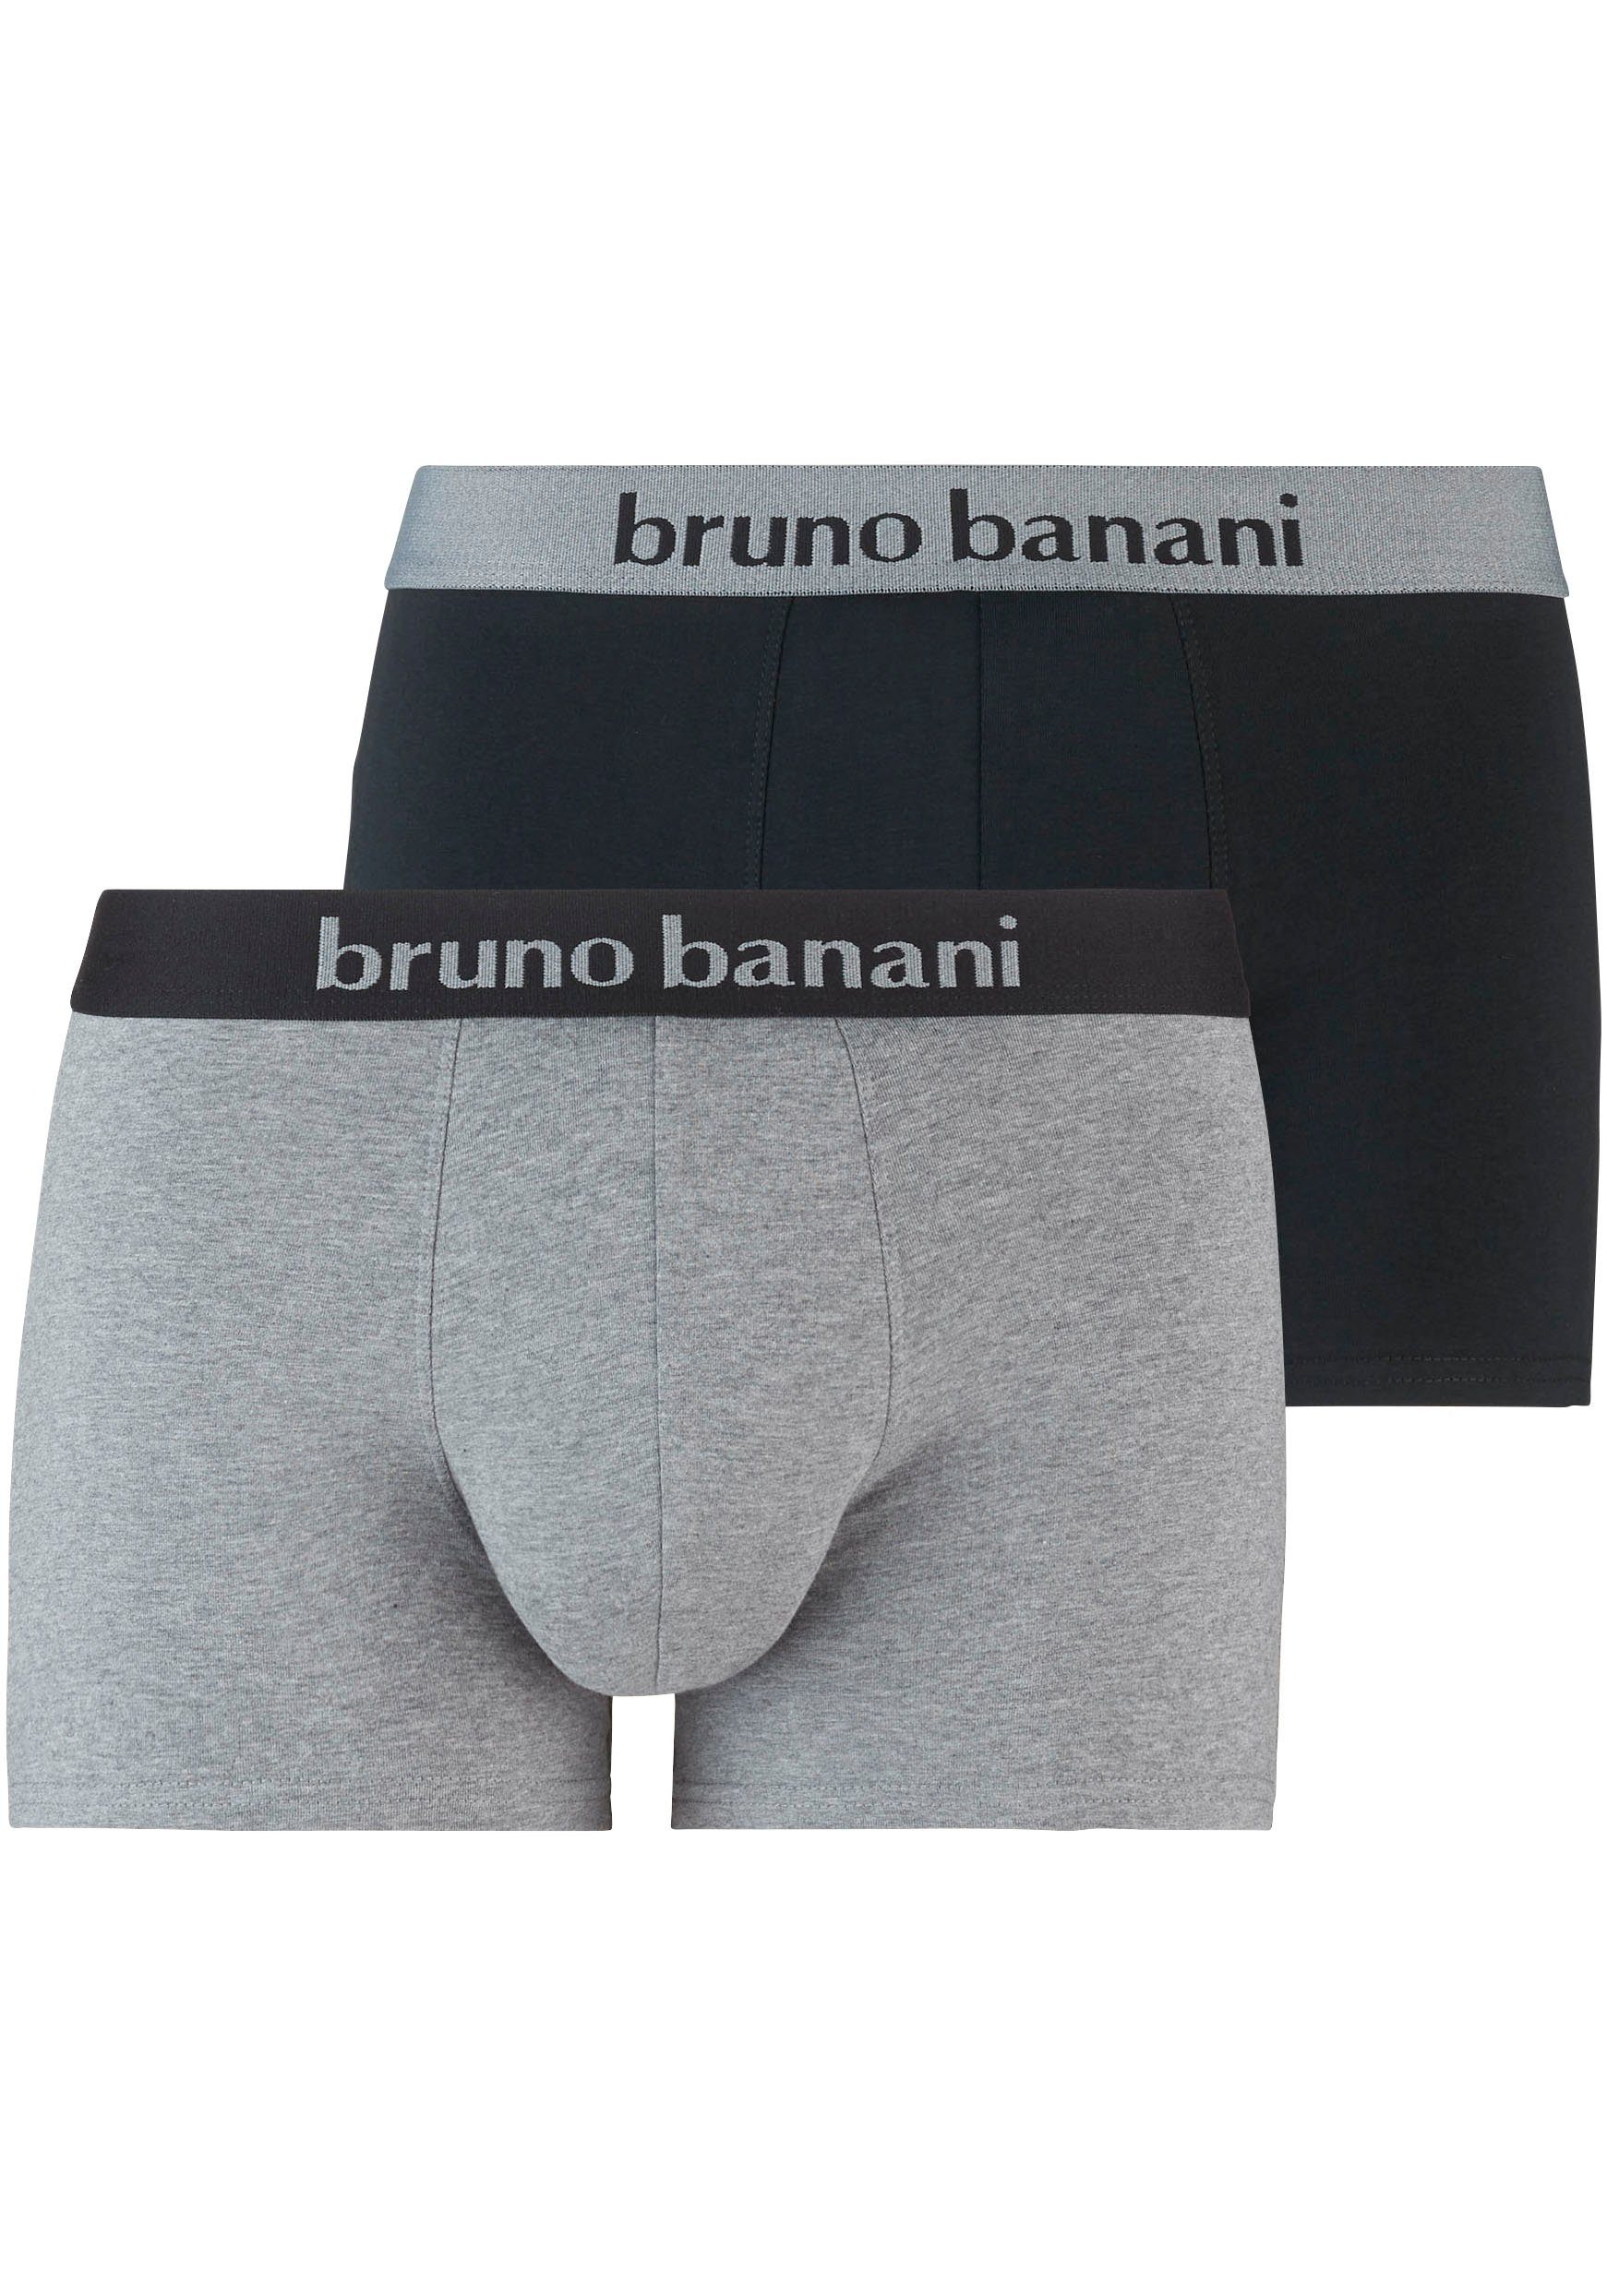 bruno banani boxershort in een eenvoudig ontwerp (set van 2) zwart